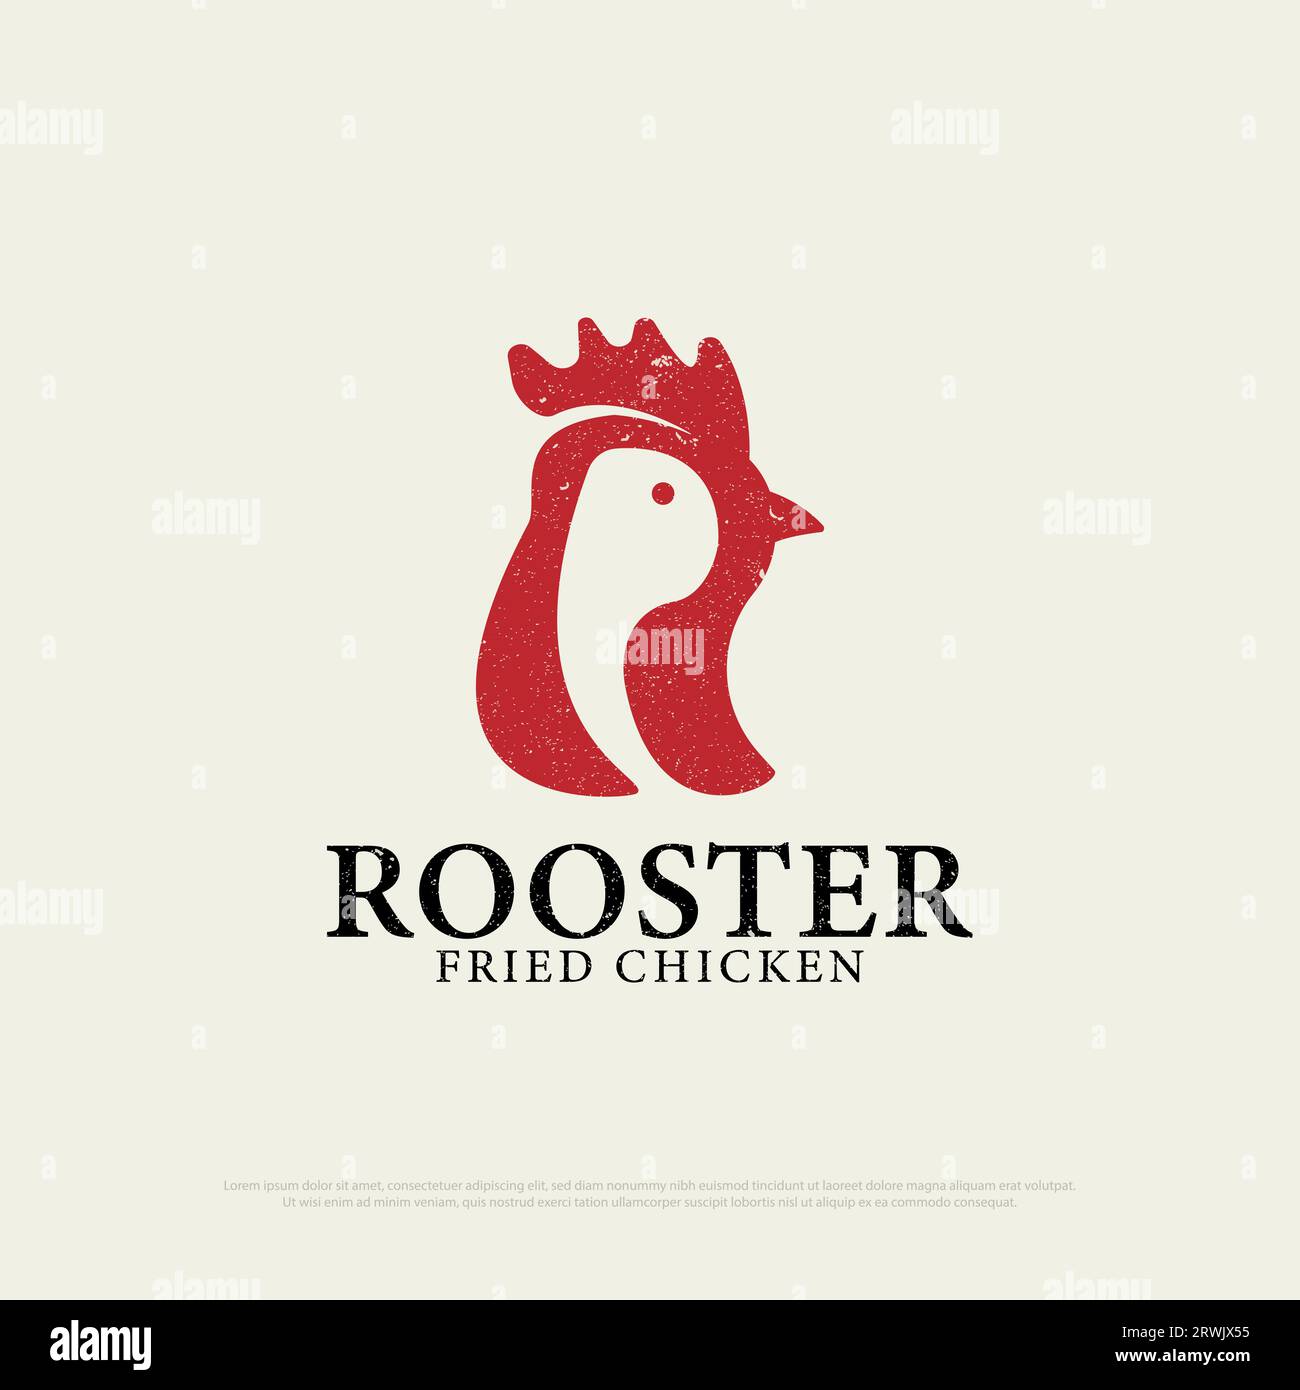 Vintage Chicken Rooster Restaurant Logo Design mit Grunge-Stil, Buchstabe R bedeutet Hahnensymbol Vektor-Illustration Stock Vektor